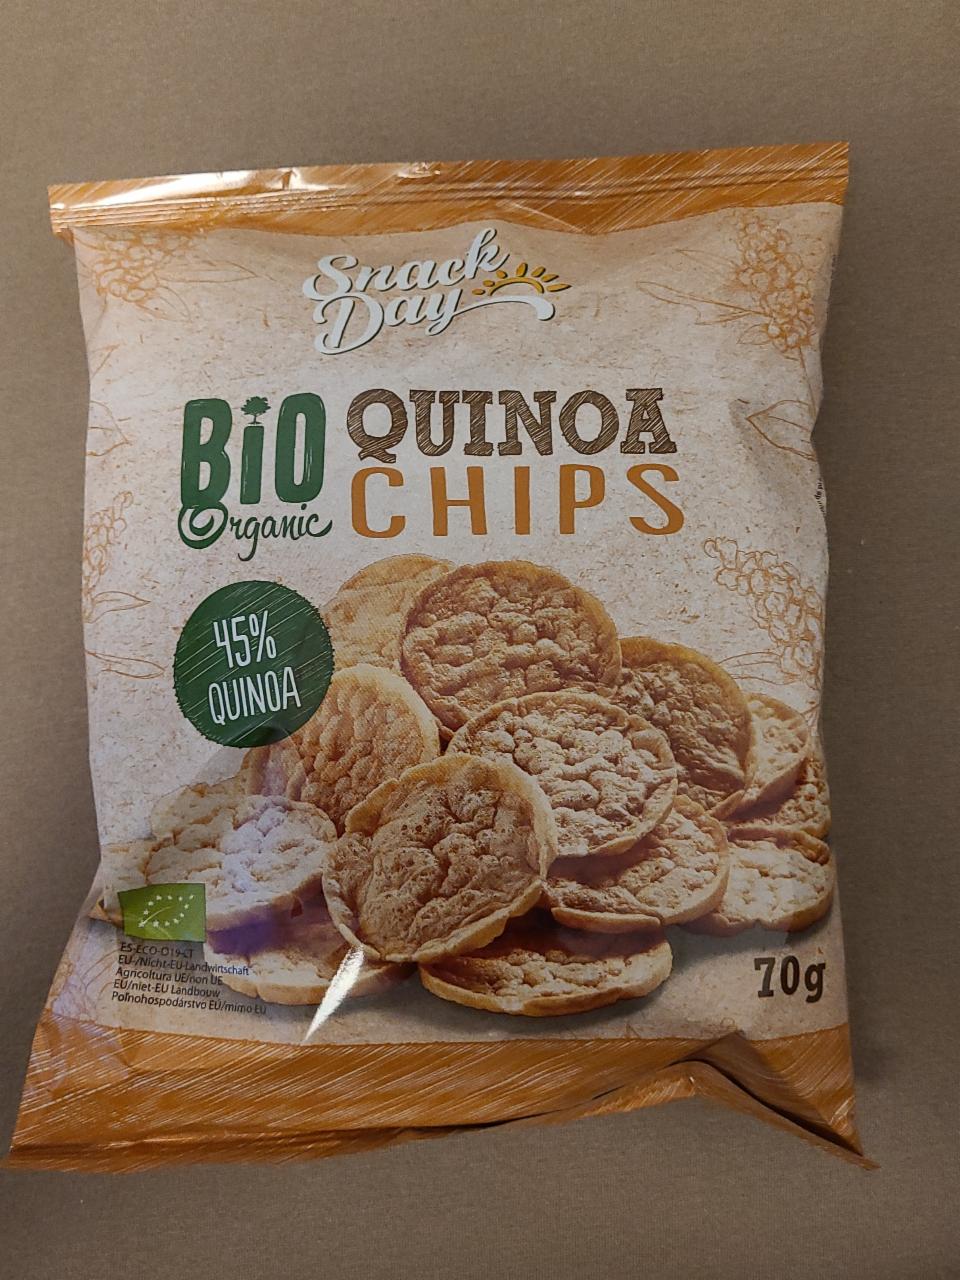 Fotografie - Quinoa chips Bio Organic Snack Day